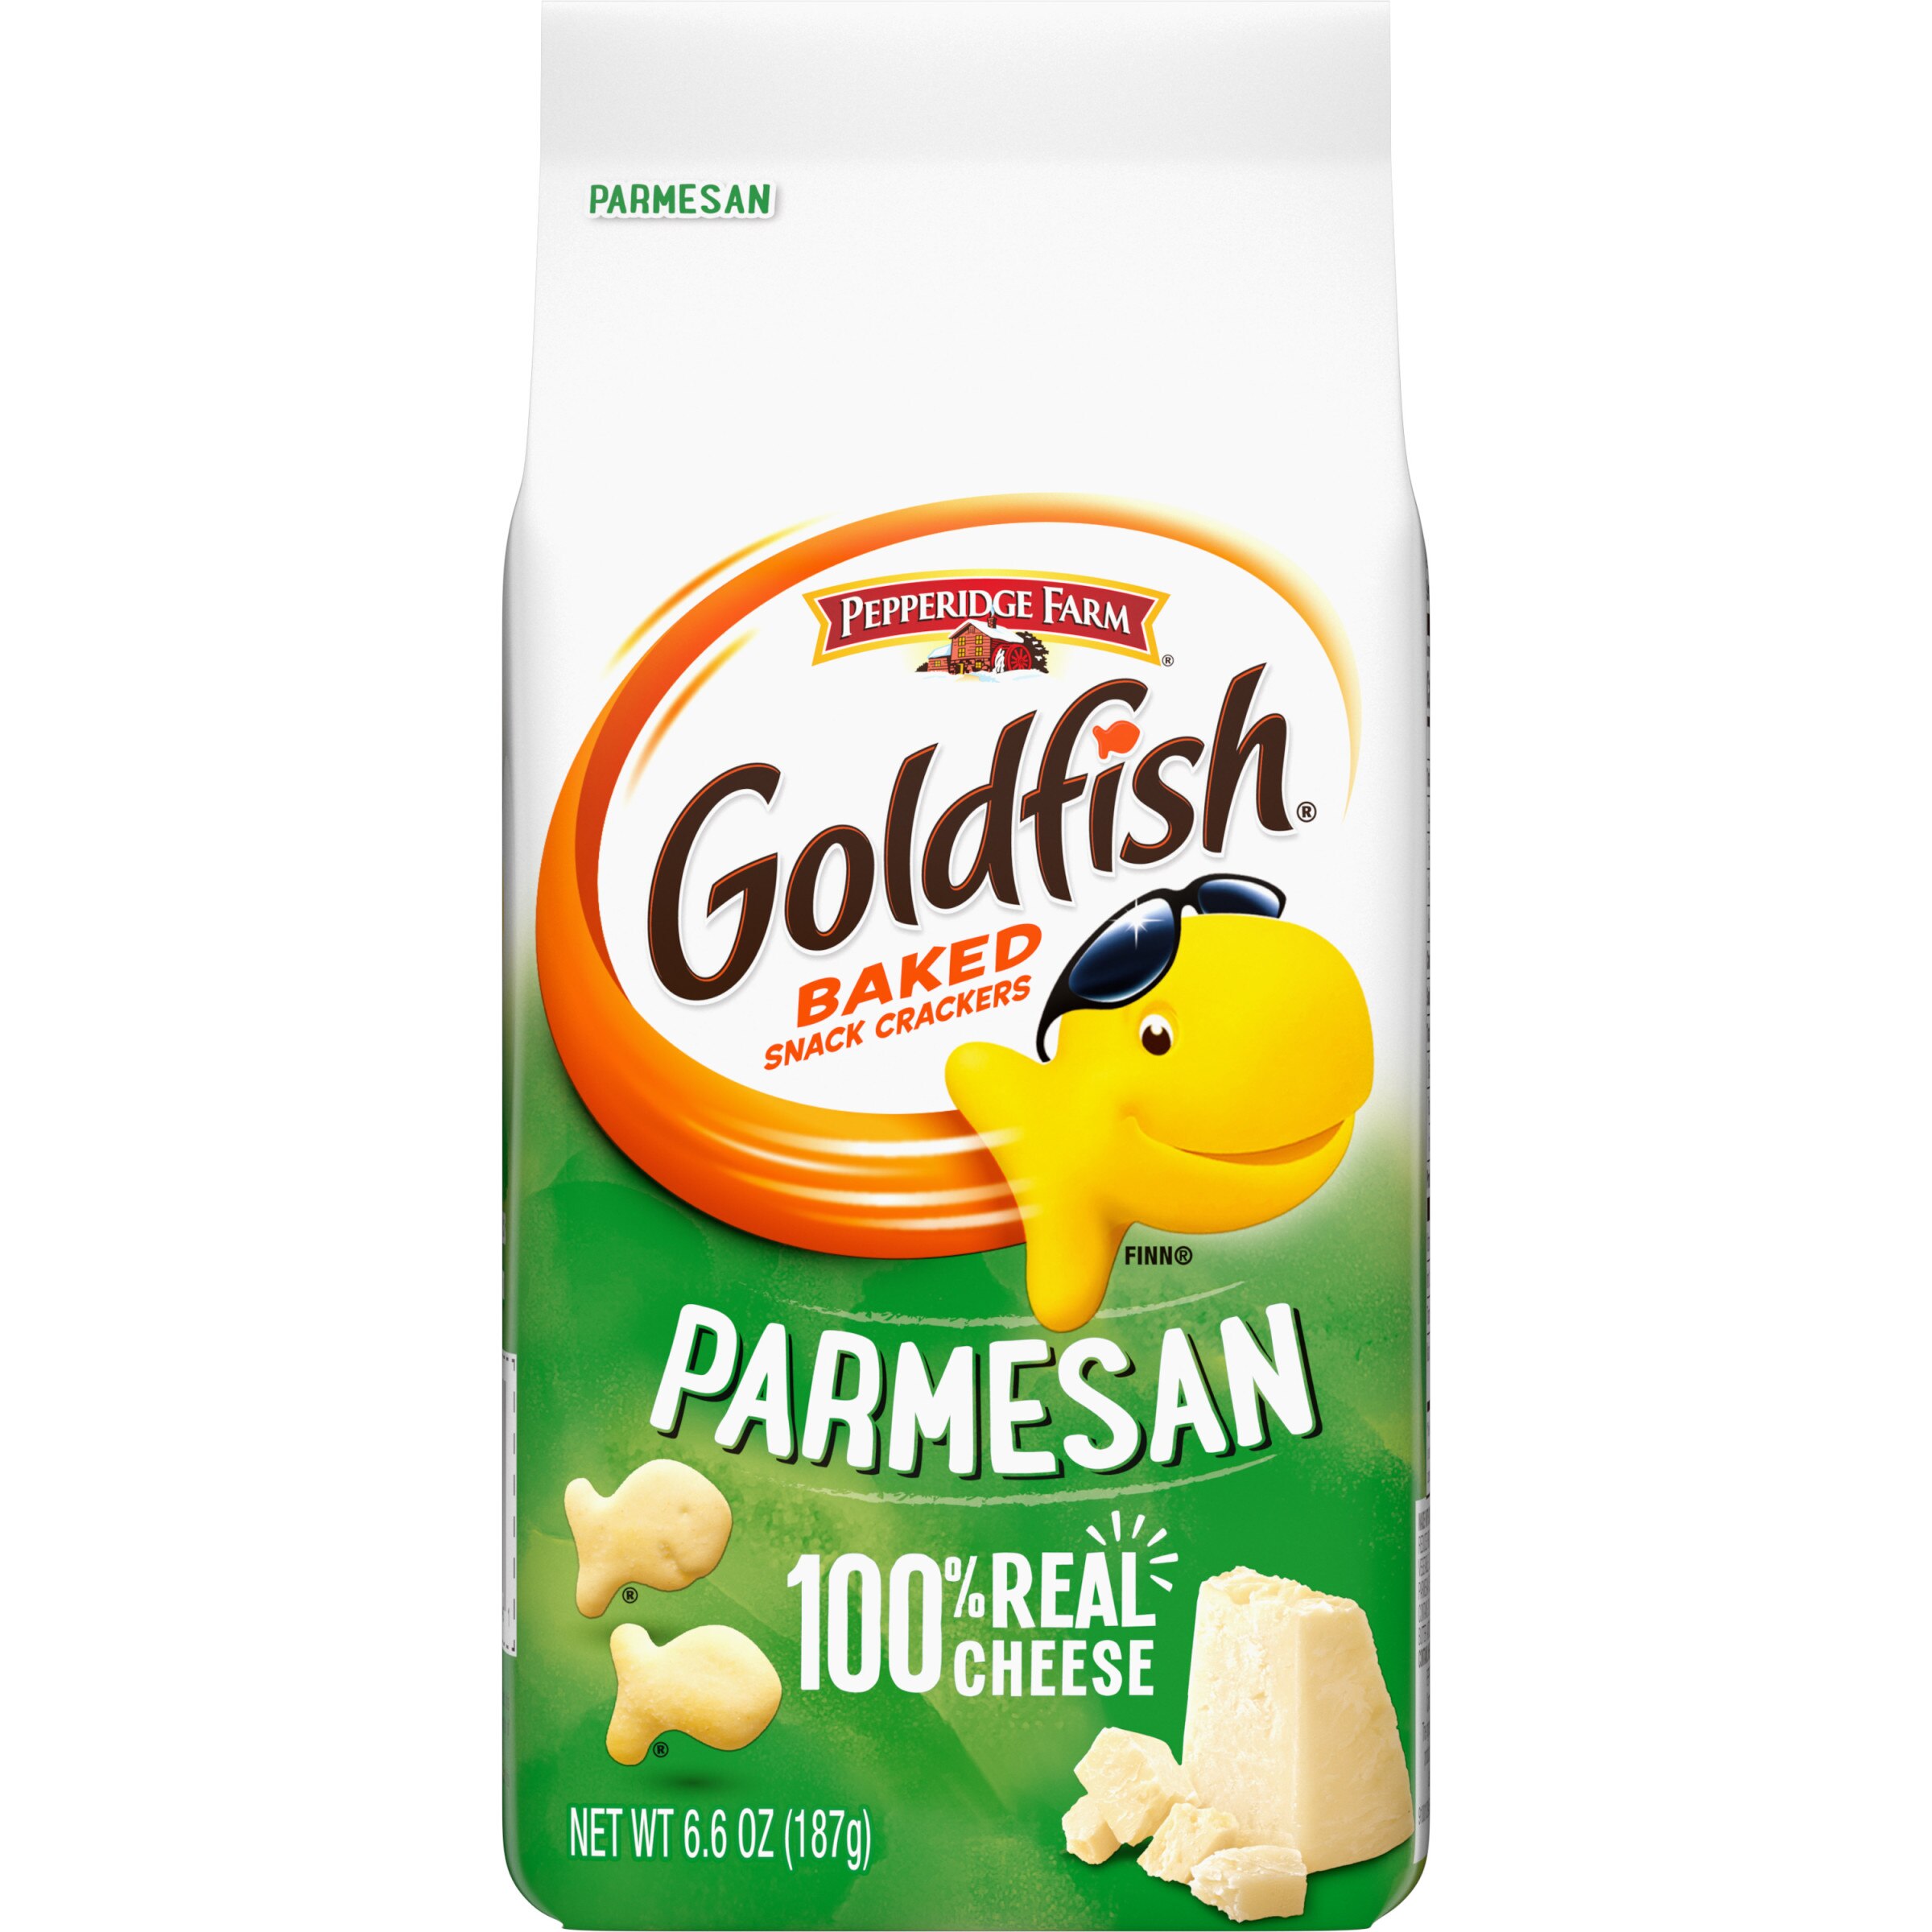 Pepperidge Farm Goldfish Parmesan Crackers, 6.6 oz